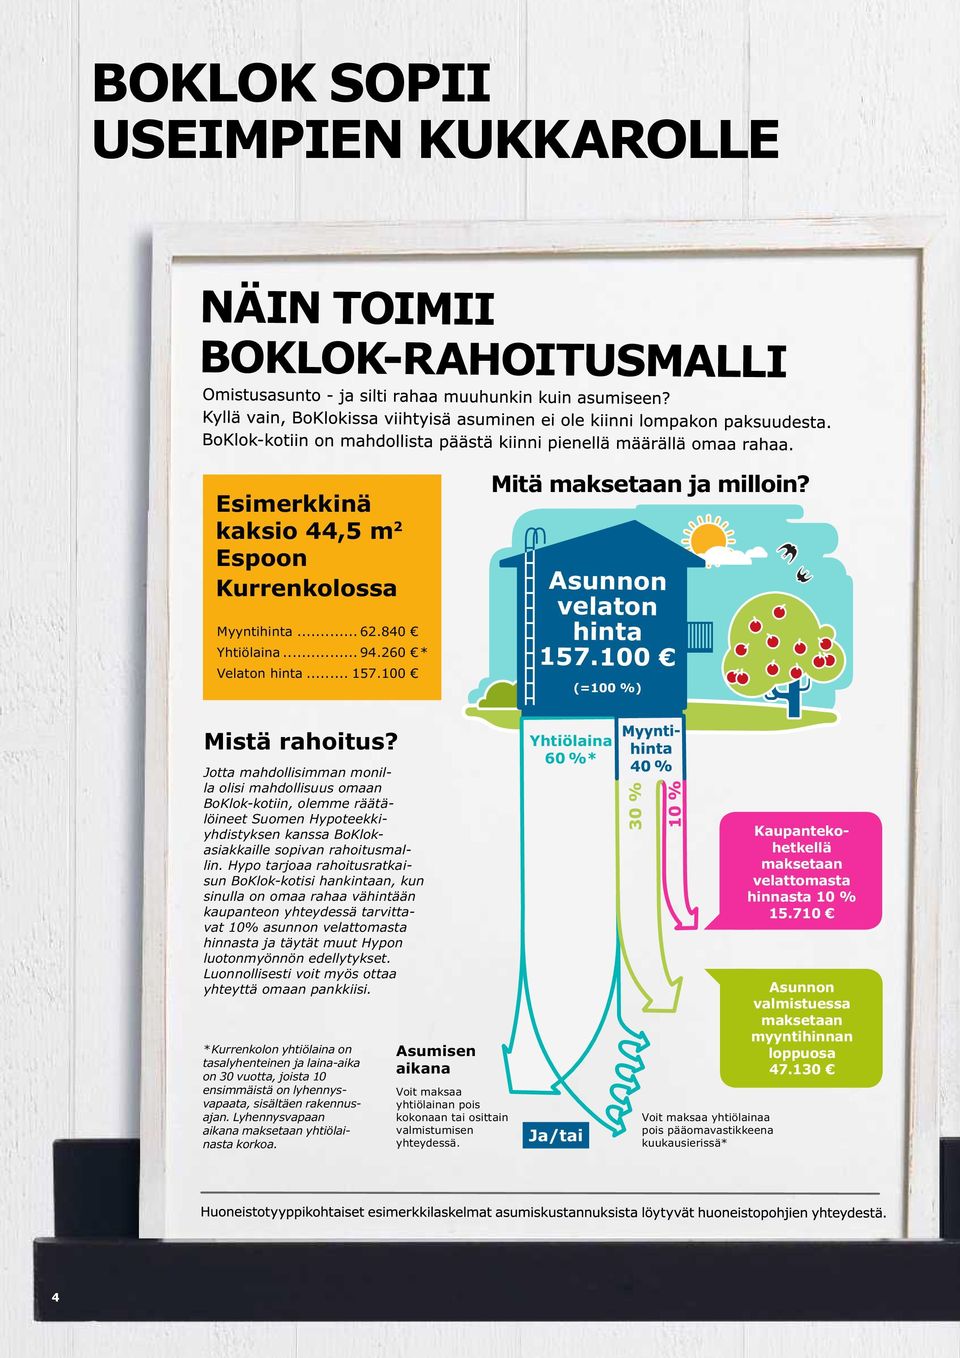 Jotta mahdollisimman monilla olisi mahdollisuus omaan BoKlok-kotiin, olemme räätälöineet Suomen Hypoteekkiyhdistyksen kanssa BoKlokasiak kaille sopivan rahoitusmallin.